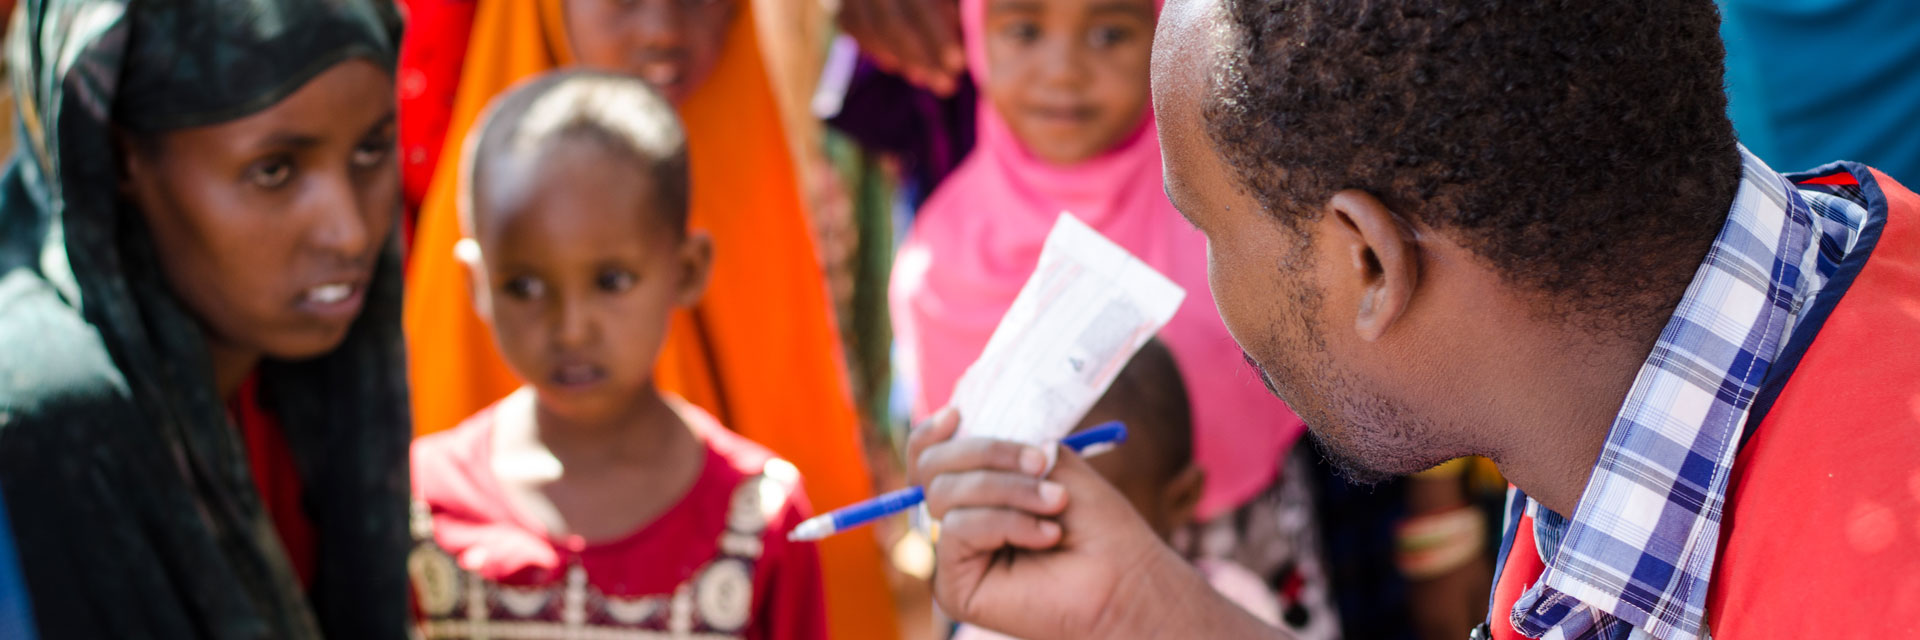 Foto: Rothalbmondarzt gibt Medikament an somalische Familie aus.